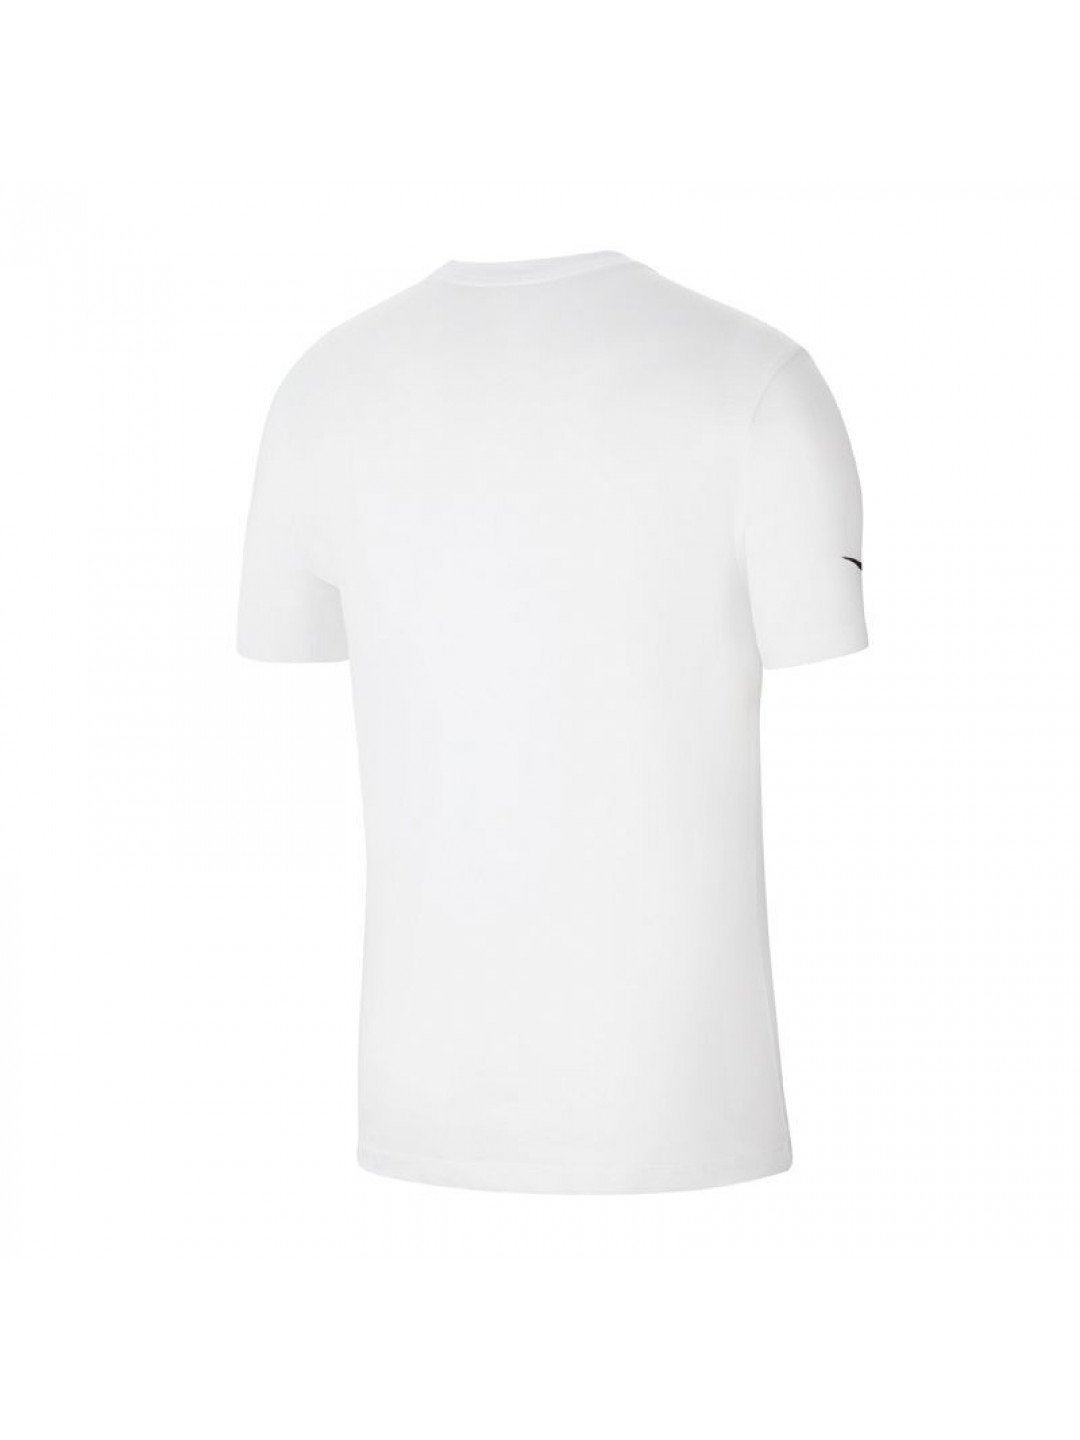 Pánské tričko Park 20 M CZ0881-100 bílé – Nike S